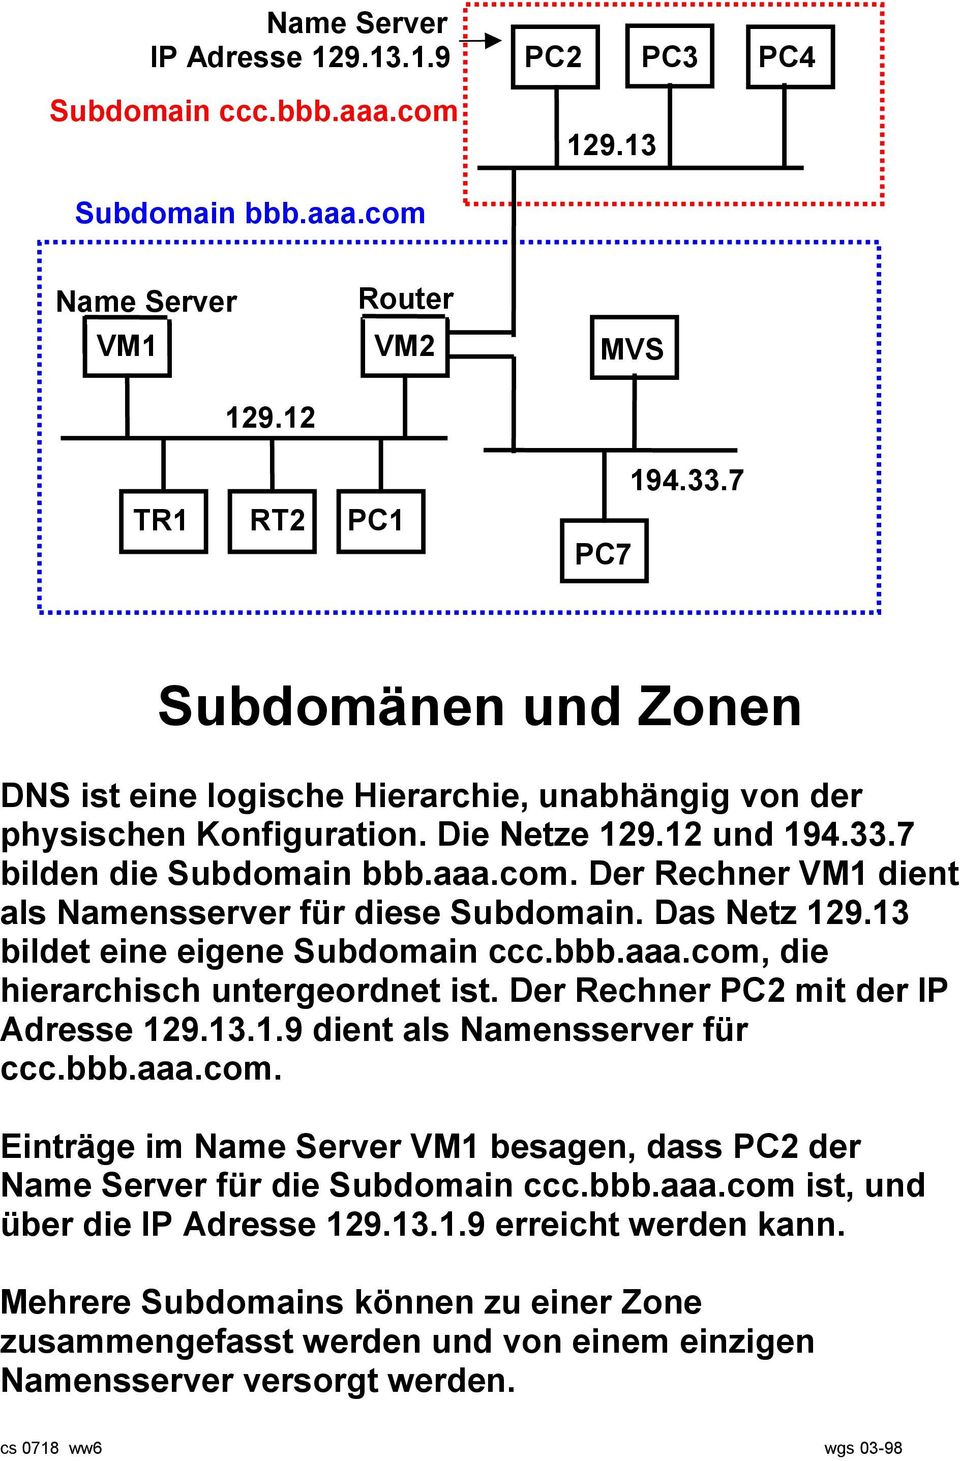 Der Rechner VM1 dient als Namensserver für diese Subdomain. Das Netz 129.13 bildet eine eigene Subdomain ccc.bbb.aaa.com, die hierarchisch untergeordnet ist. Der Rechner PC2 mit der IP Adresse 129.13.1.9 dient als Namensserver für ccc.